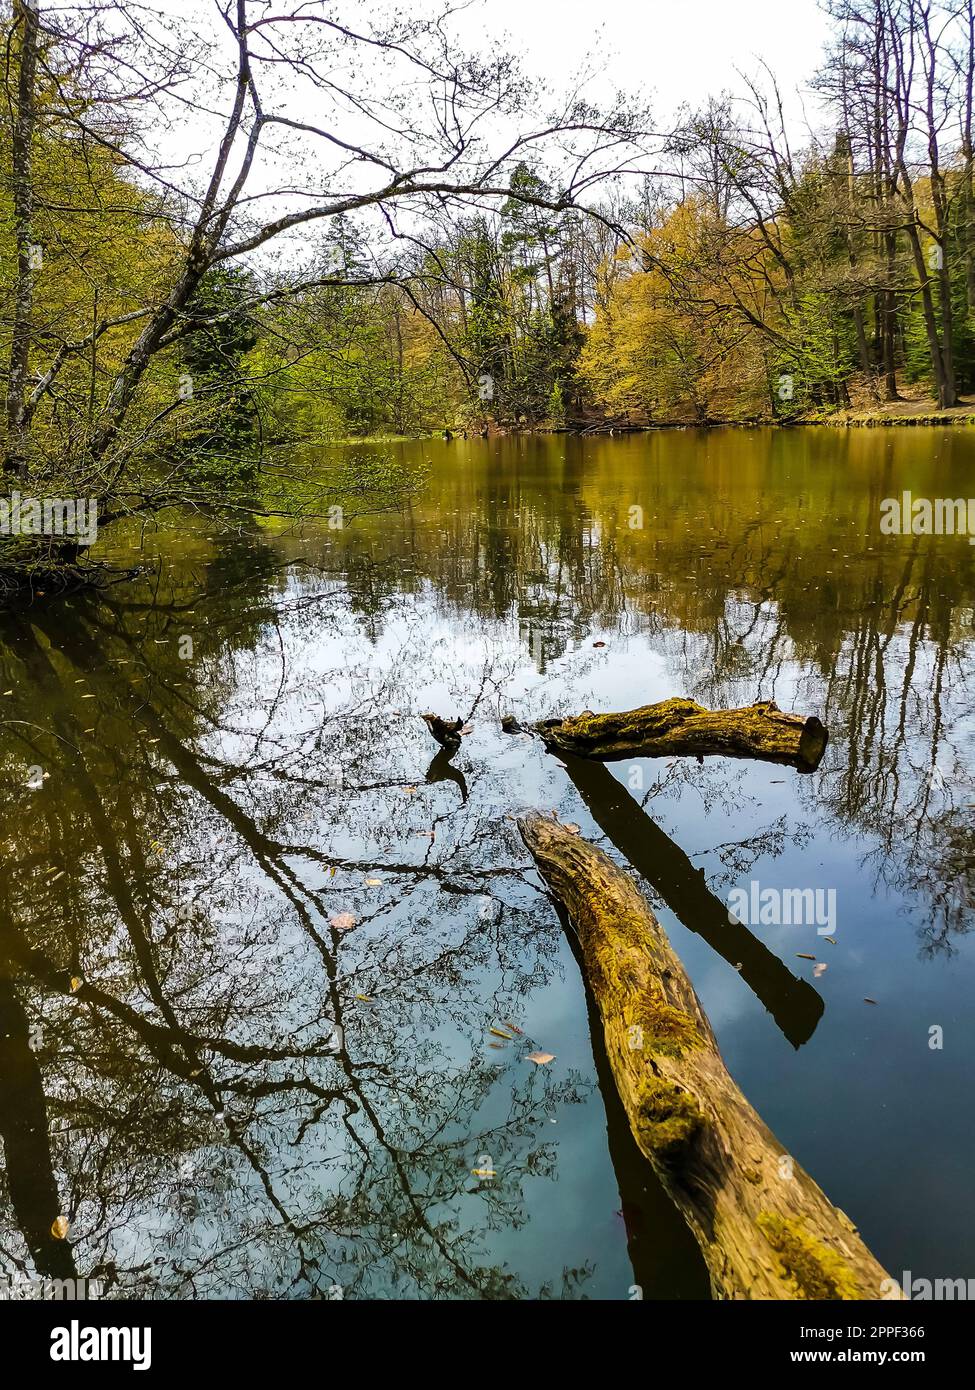 Alemania, Stuttgart Parque de la ciudad de vahingen steinbachsee lago agua hermoso paisaje natural en primavera Foto de stock